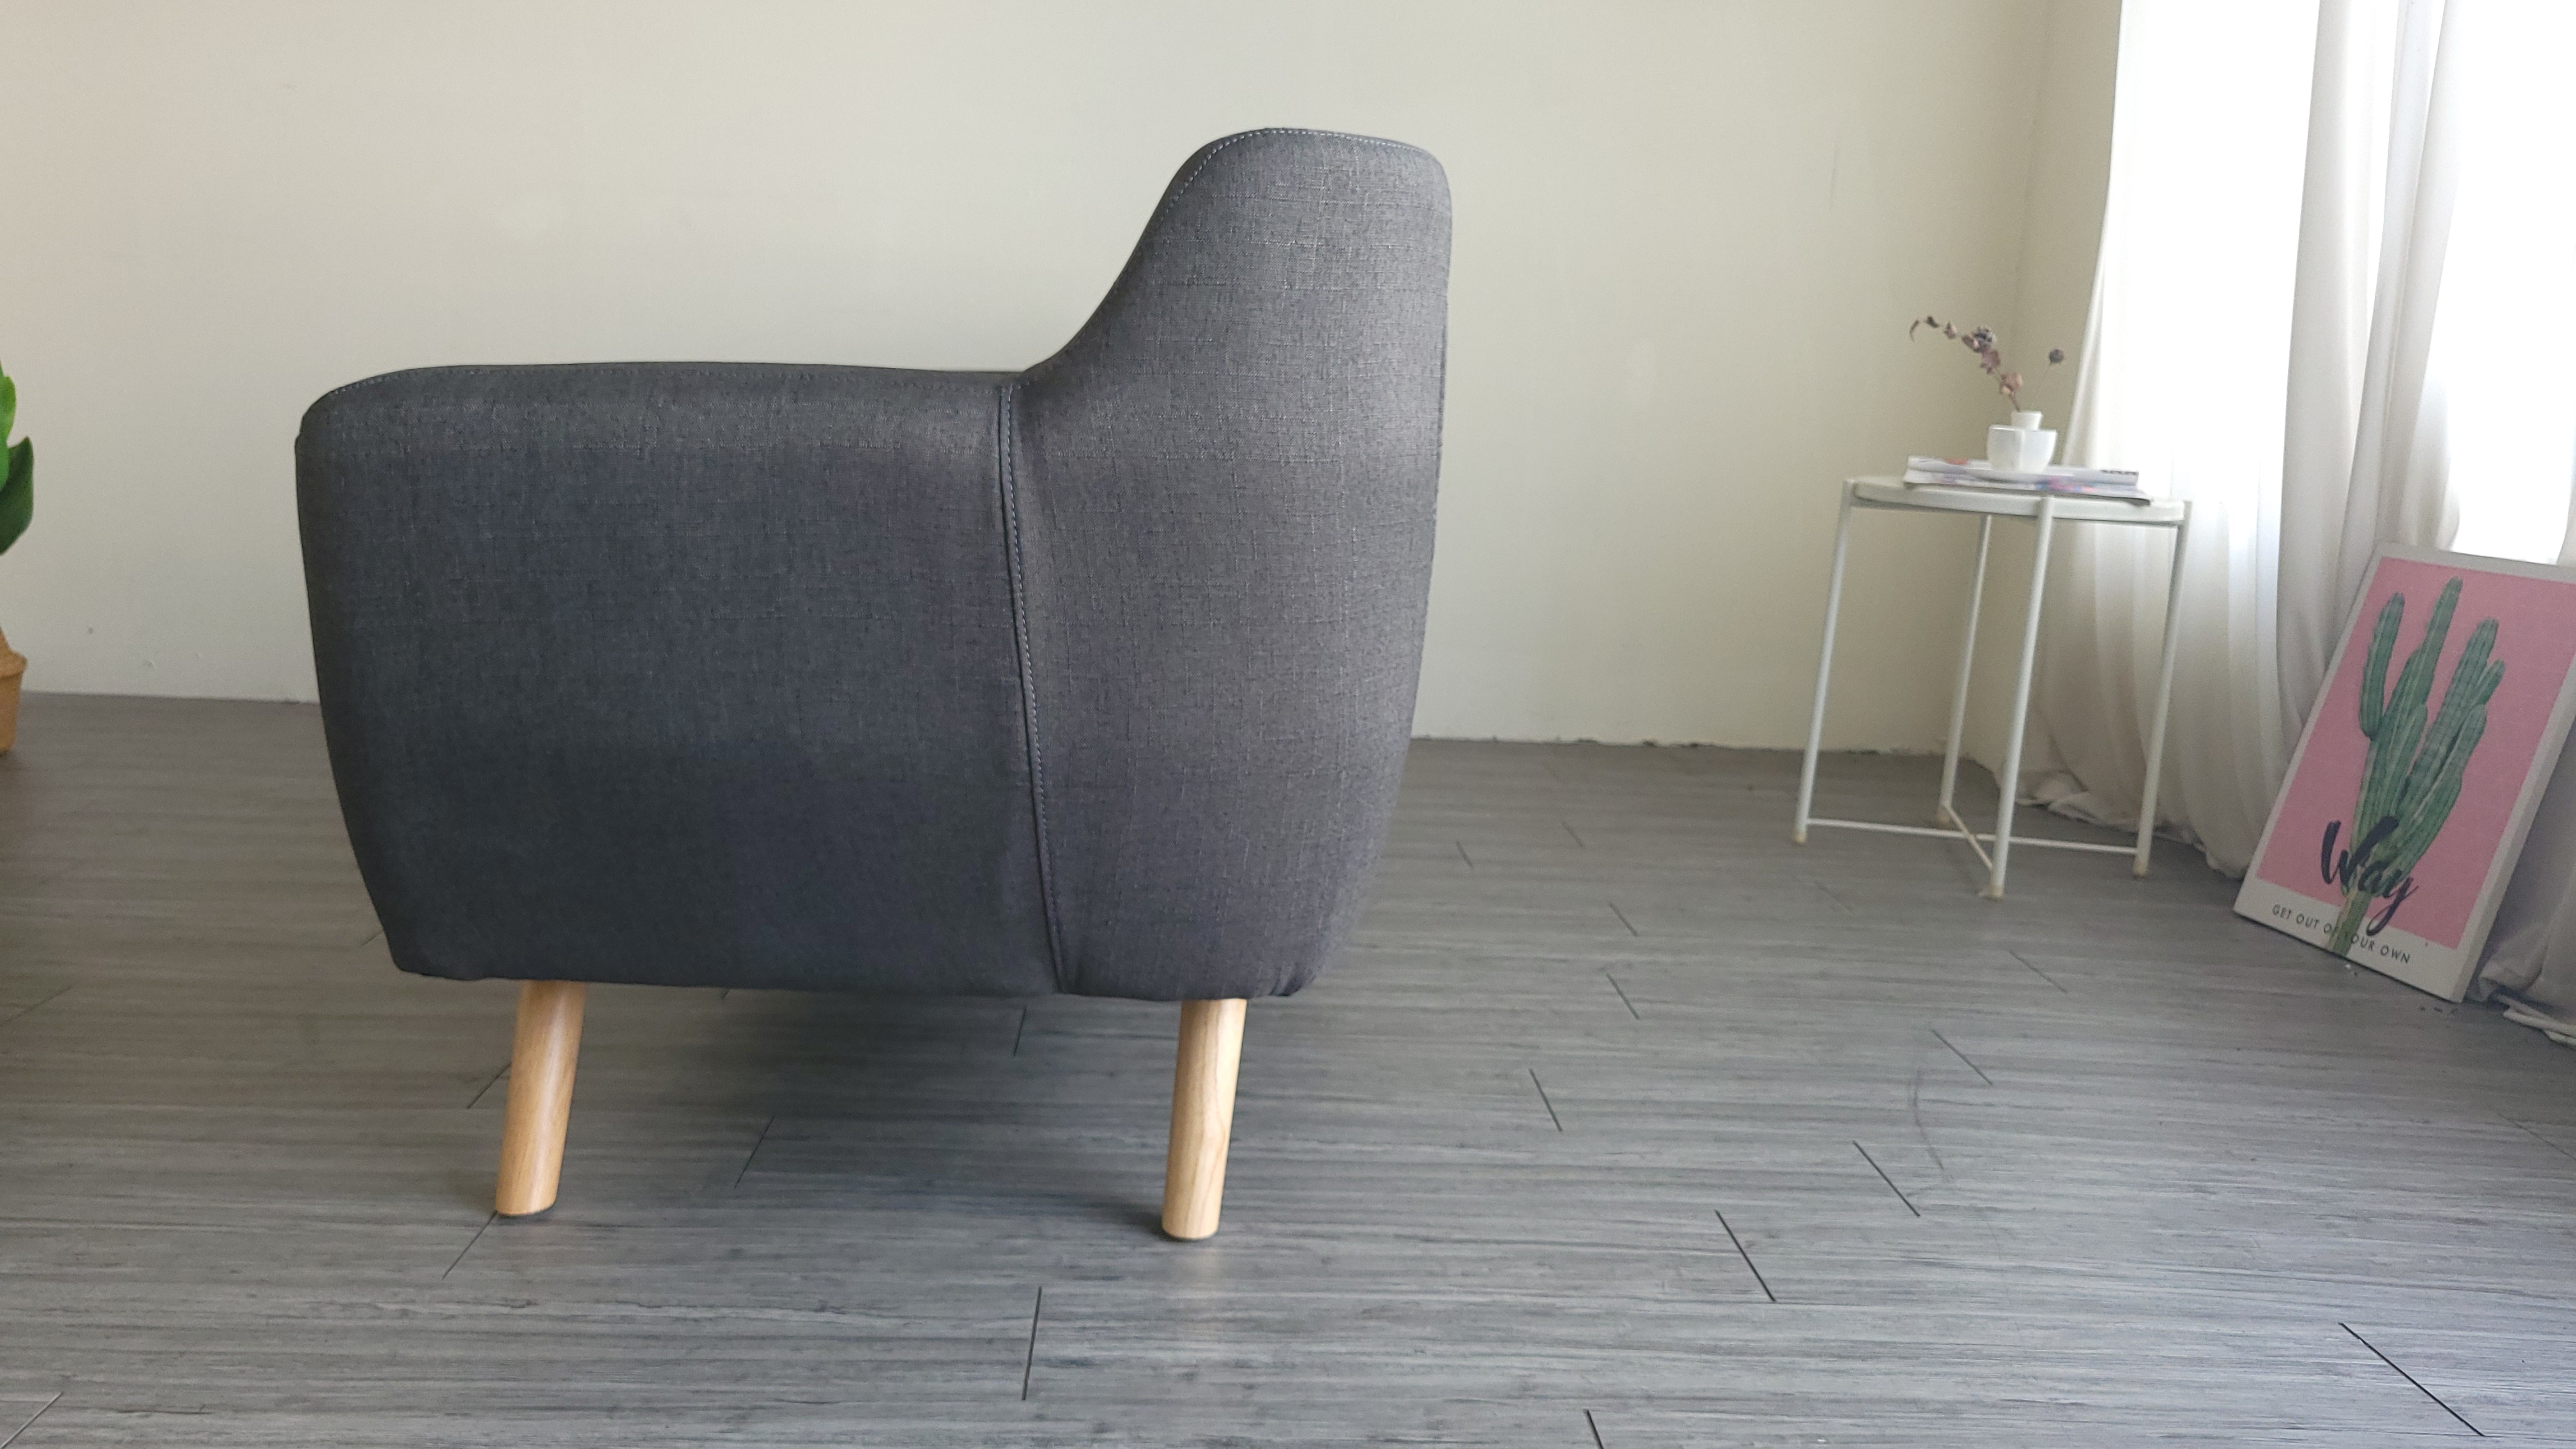 Sofa ghế băng dài Juno Sofa 1m8 nệm rời tháo giặt màu xám.